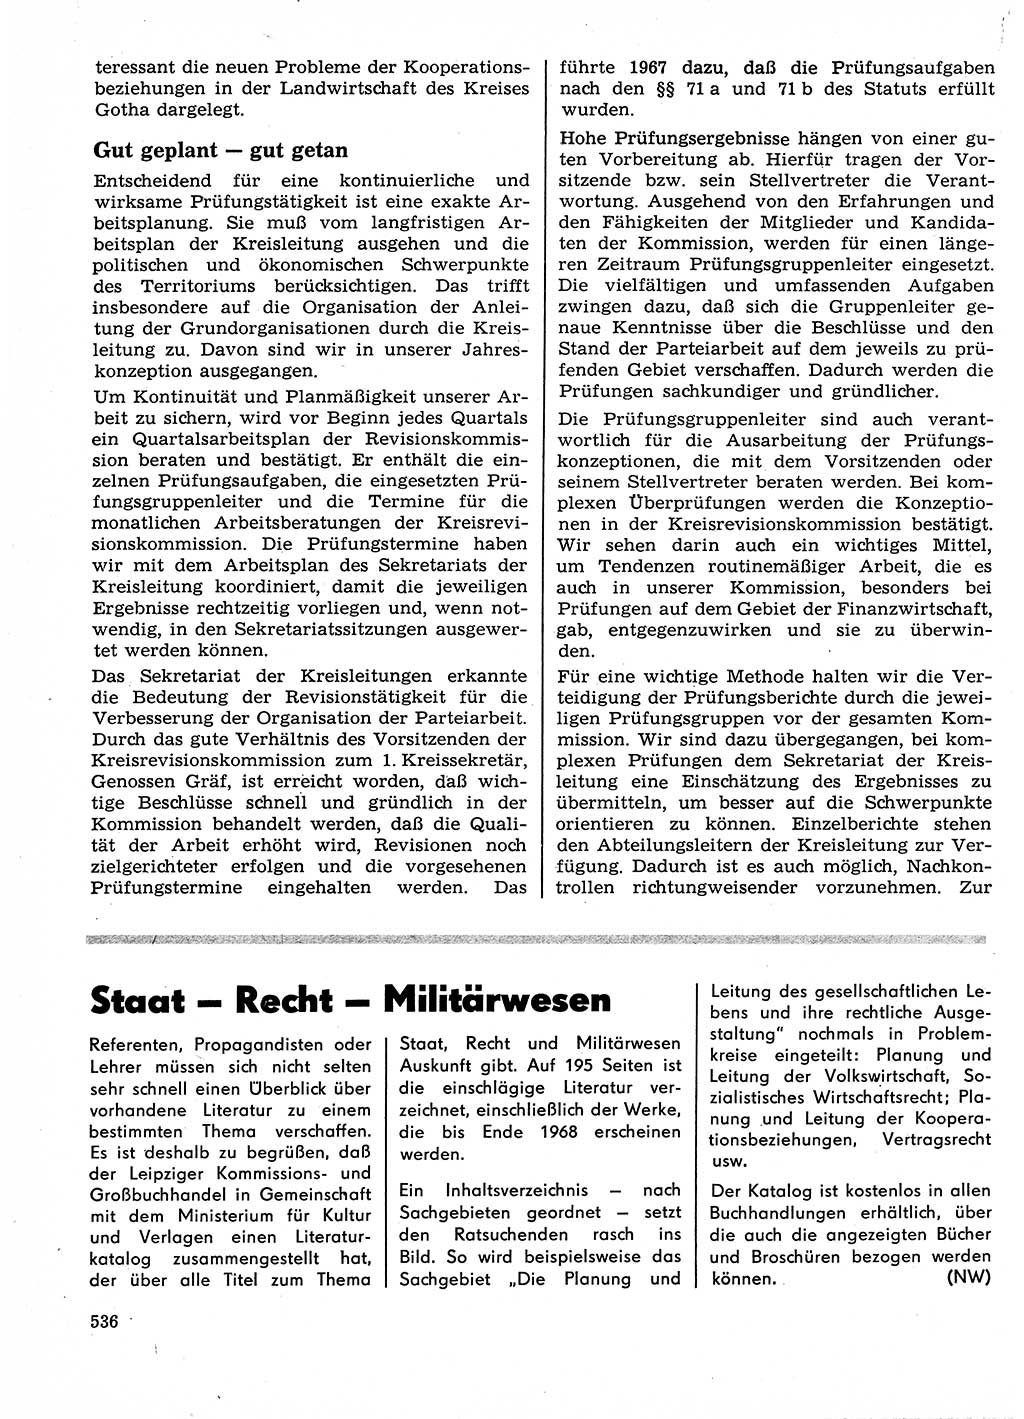 Neuer Weg (NW), Organ des Zentralkomitees (ZK) der SED (Sozialistische Einheitspartei Deutschlands) für Fragen des Parteilebens, 23. Jahrgang [Deutsche Demokratische Republik (DDR)] 1968, Seite 536 (NW ZK SED DDR 1968, S. 536)